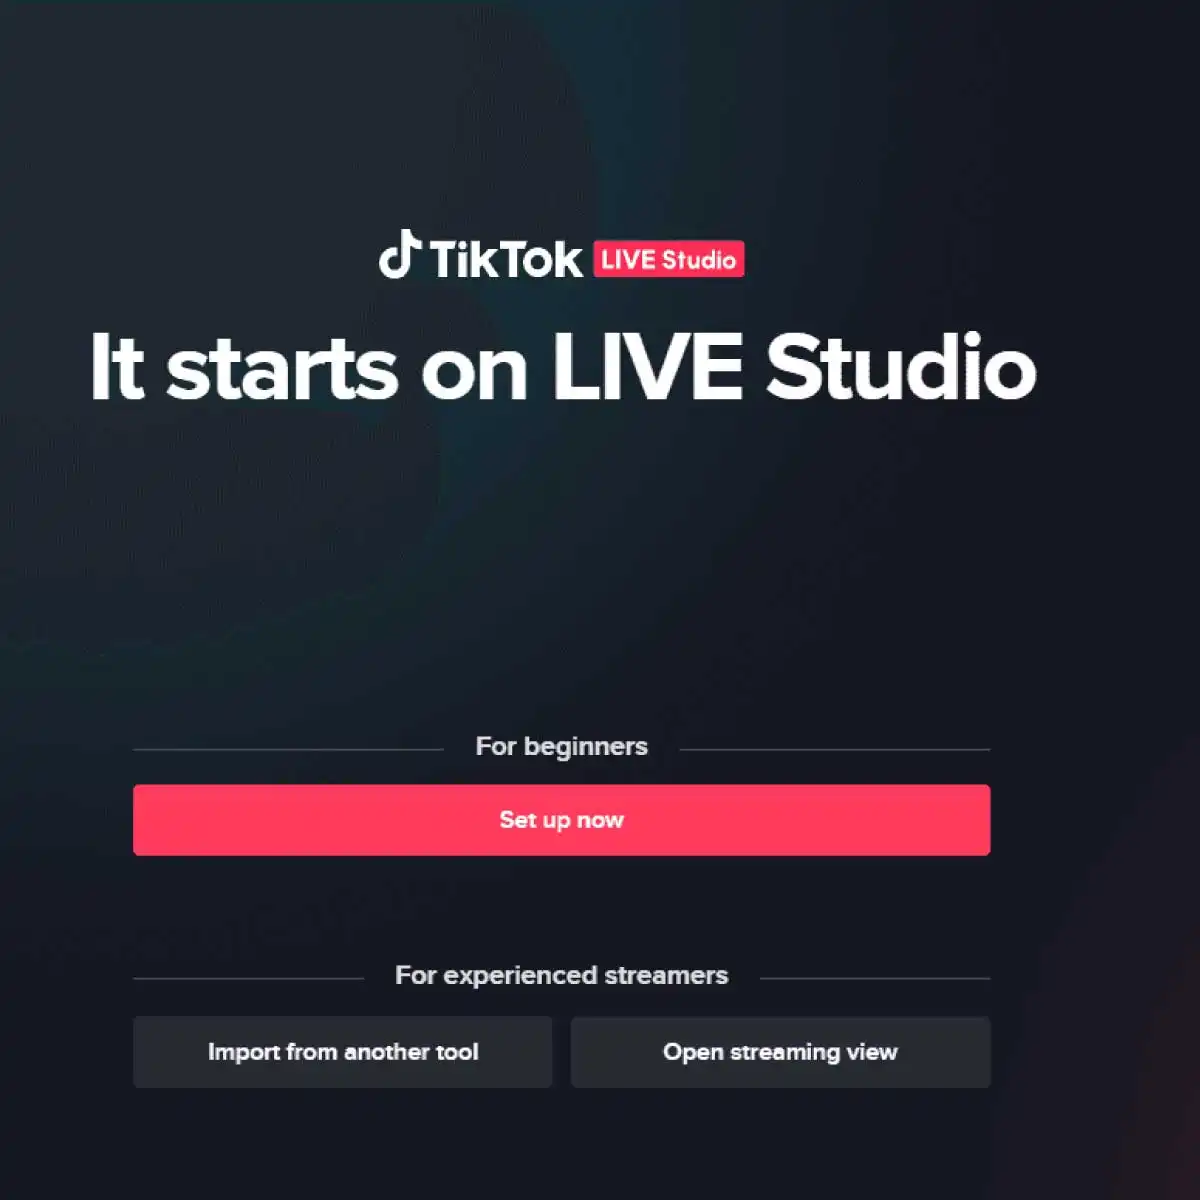 TikTok Live Studio